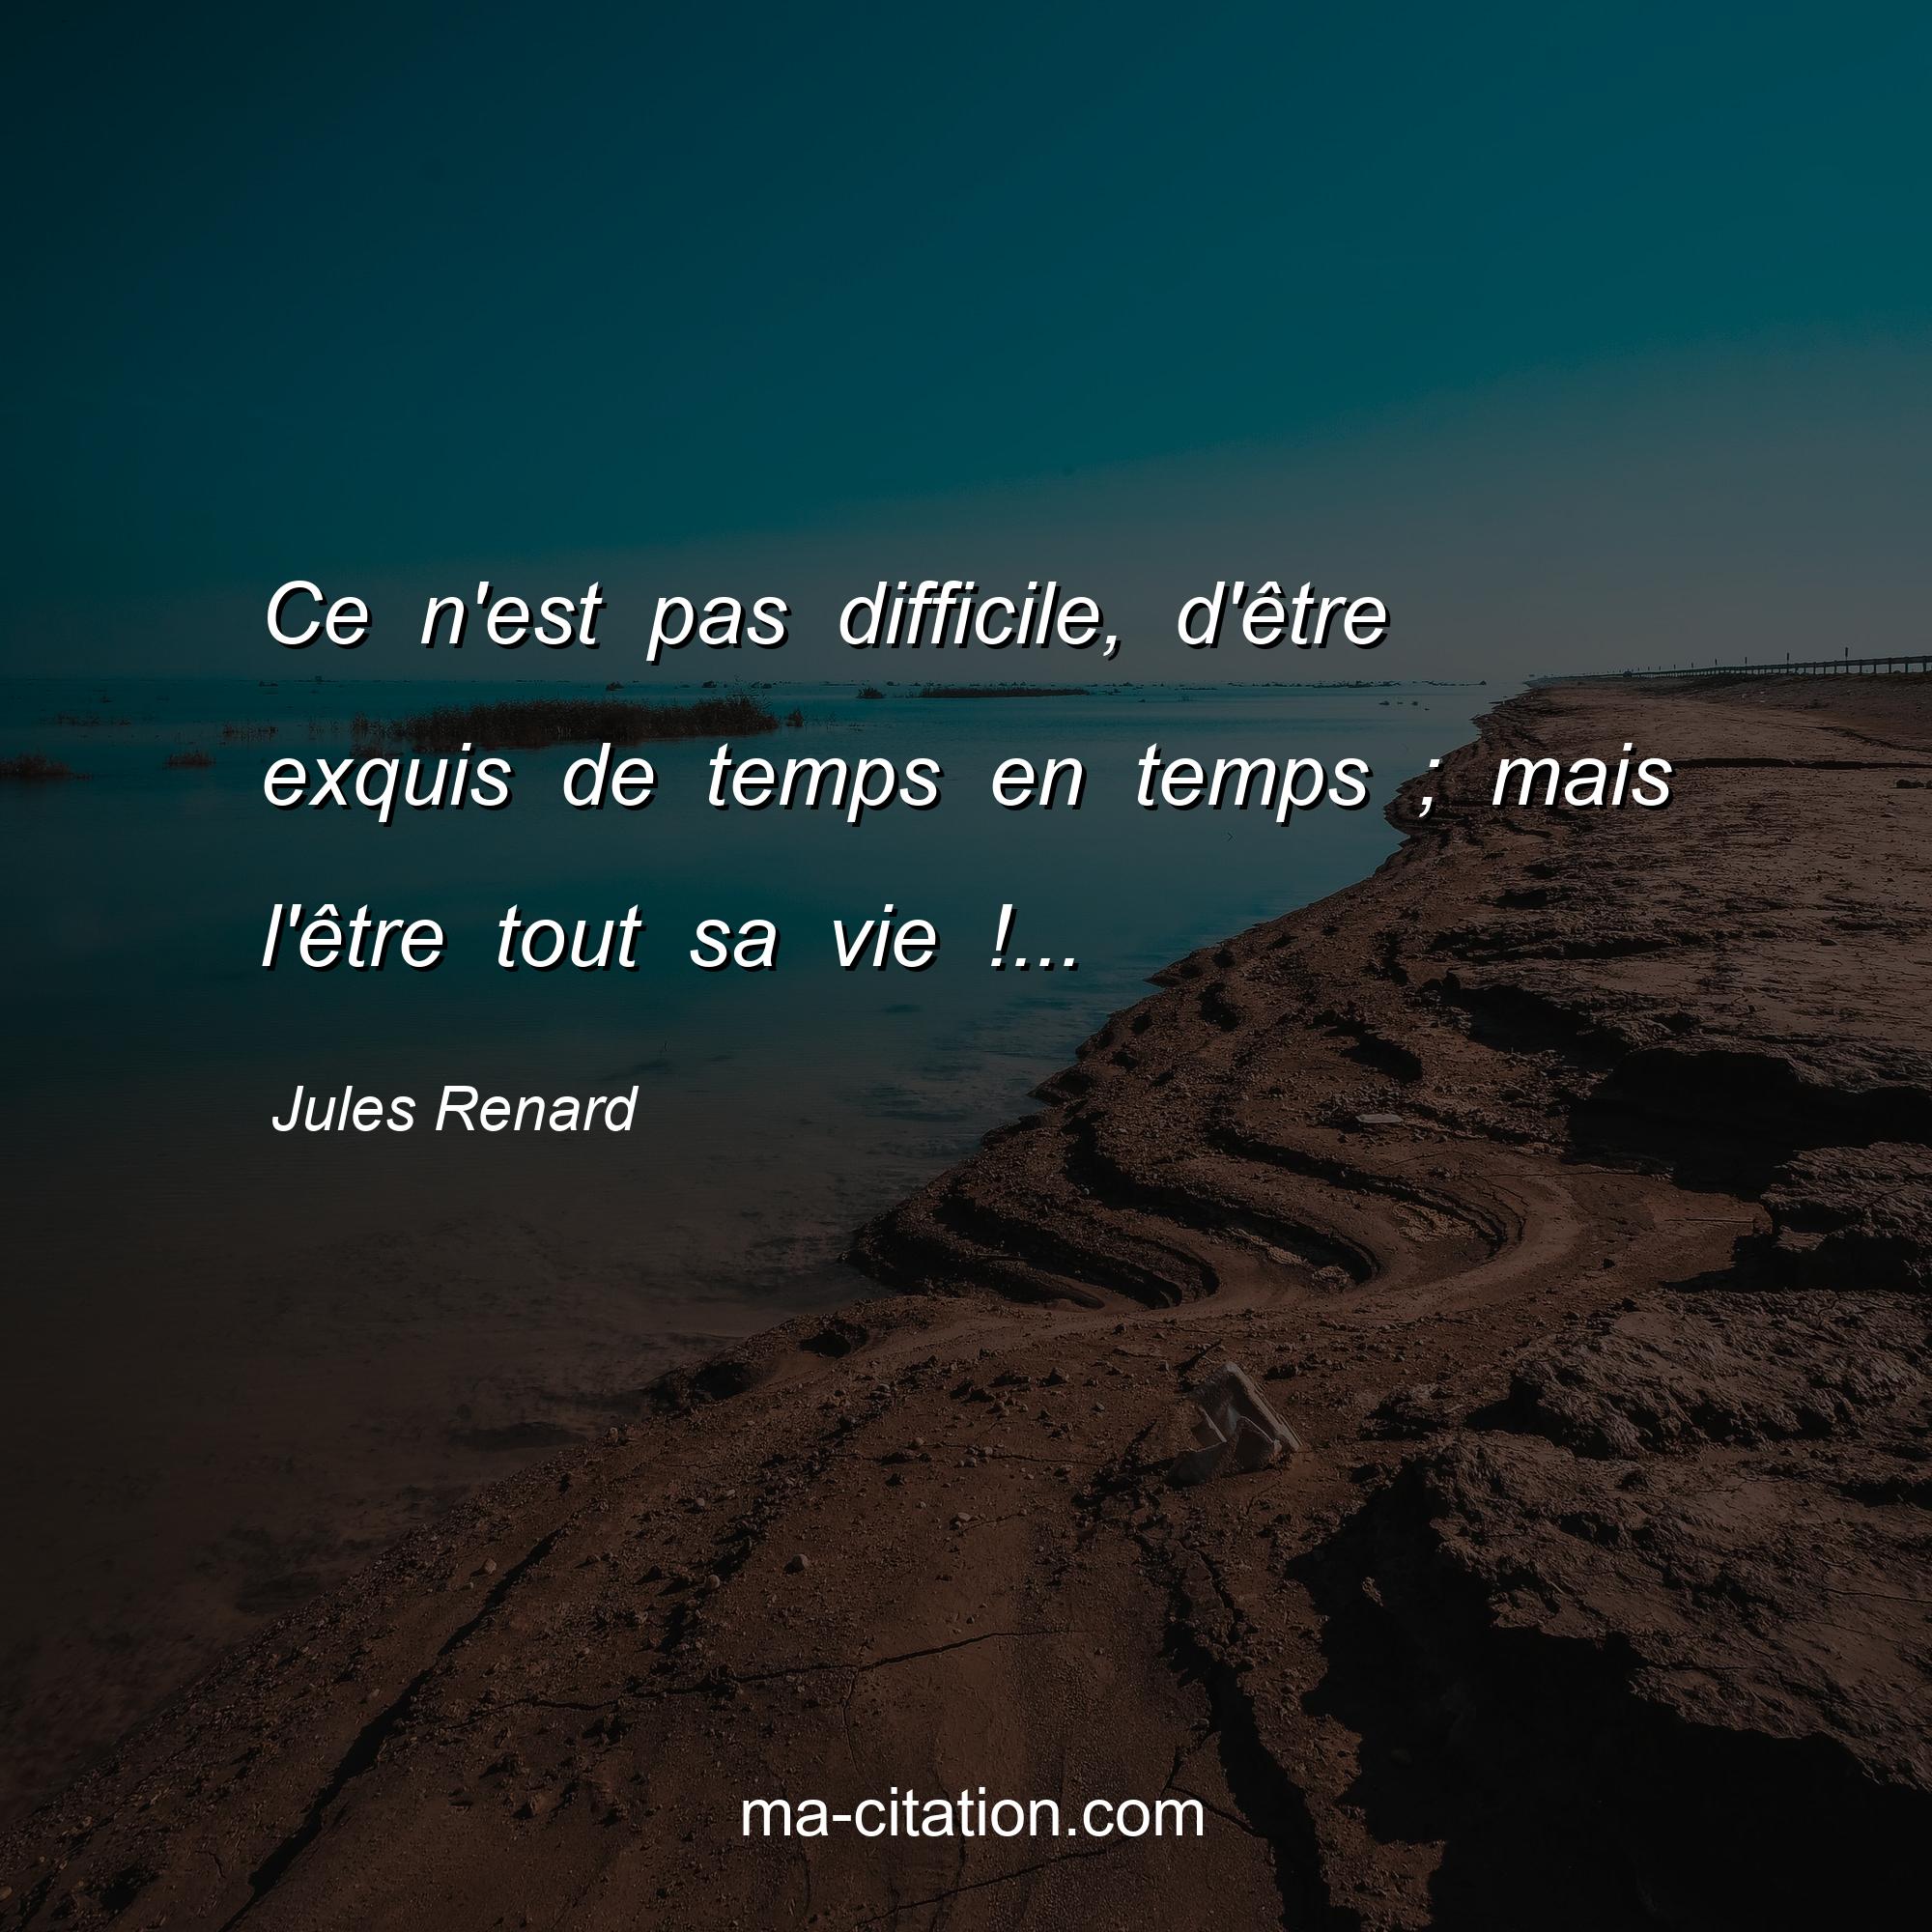 Jules Renard : Ce n'est pas difficile, d'être exquis de temps en temps ; mais l'être tout sa vie !...